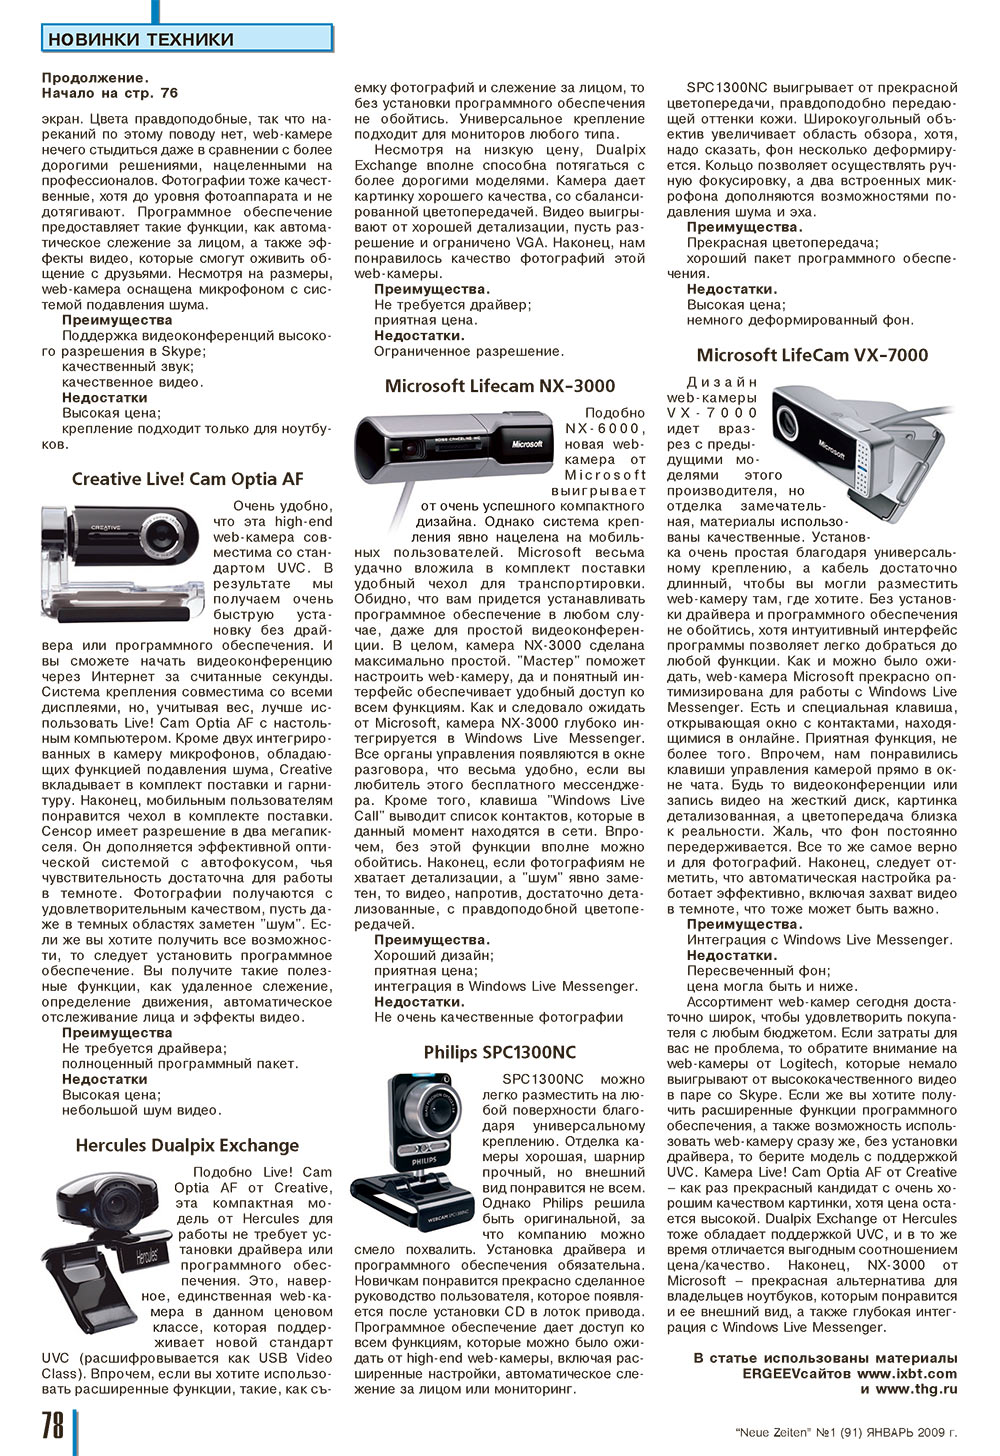 Neue Zeiten, журнал. 2009 №1 стр.78